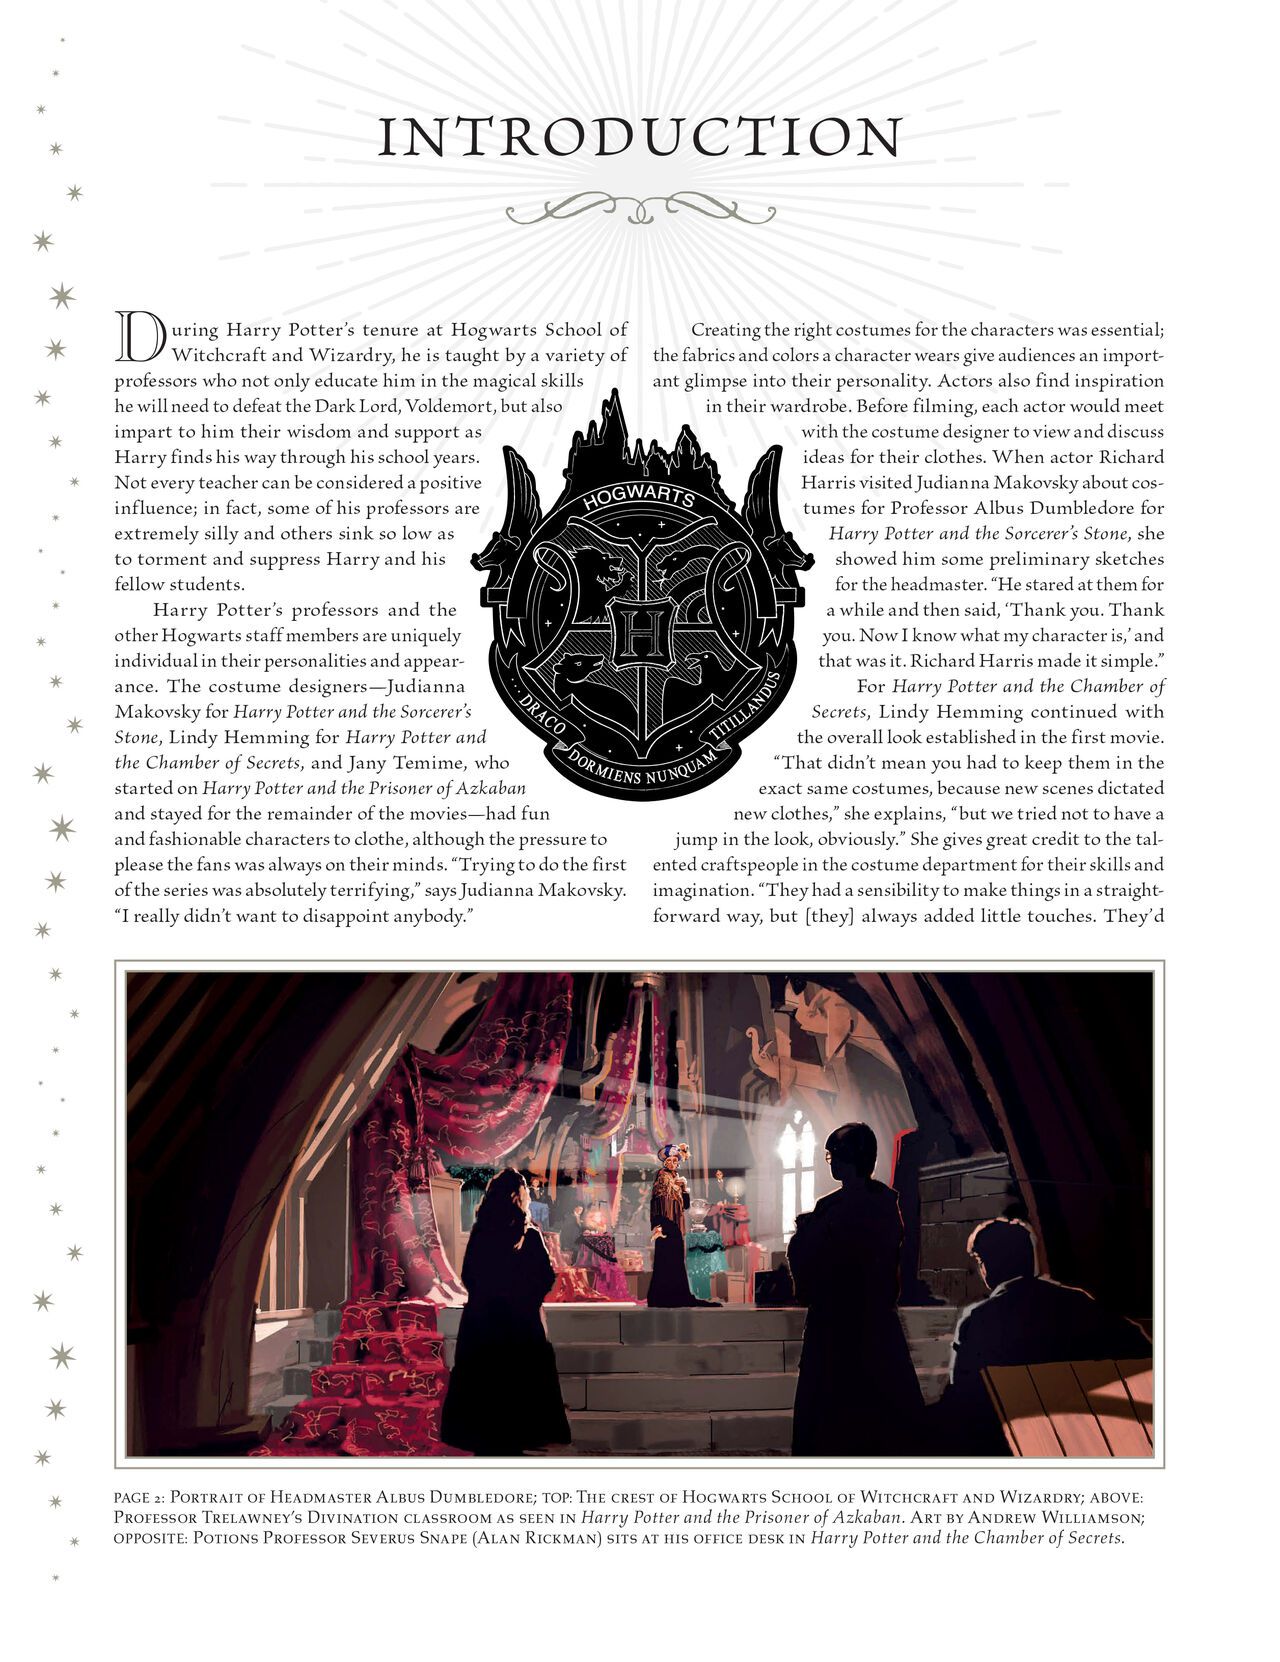 Harry Potter - Film Vault v11 - Hogwarts Professors and Staff 6